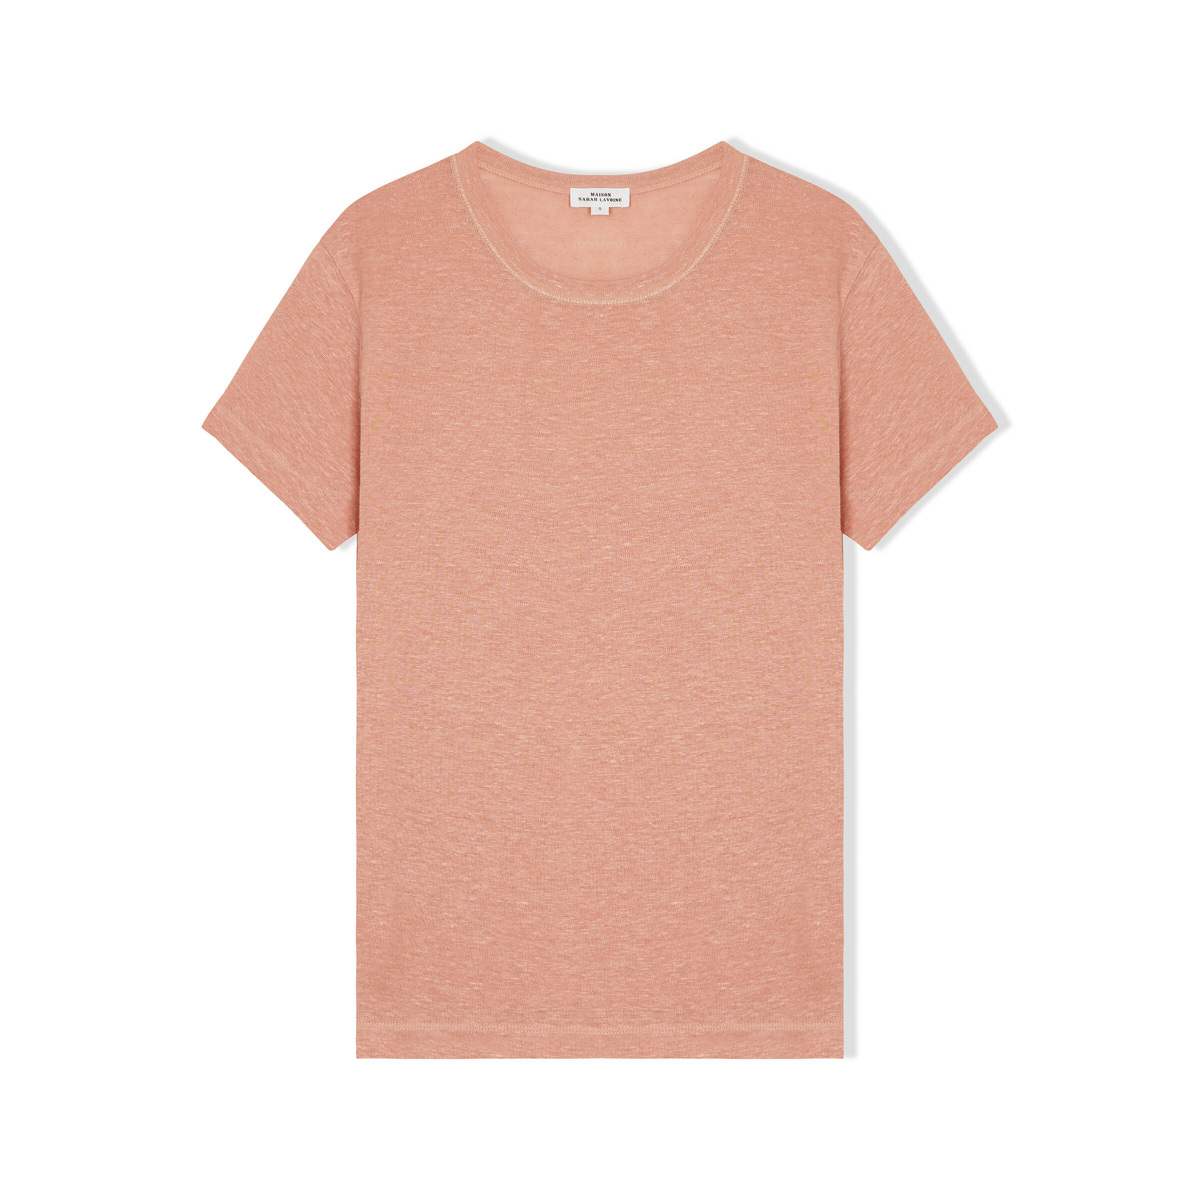 Lina Tee Shirt, Rosewood - Round Neck - 100% Linen - image 1